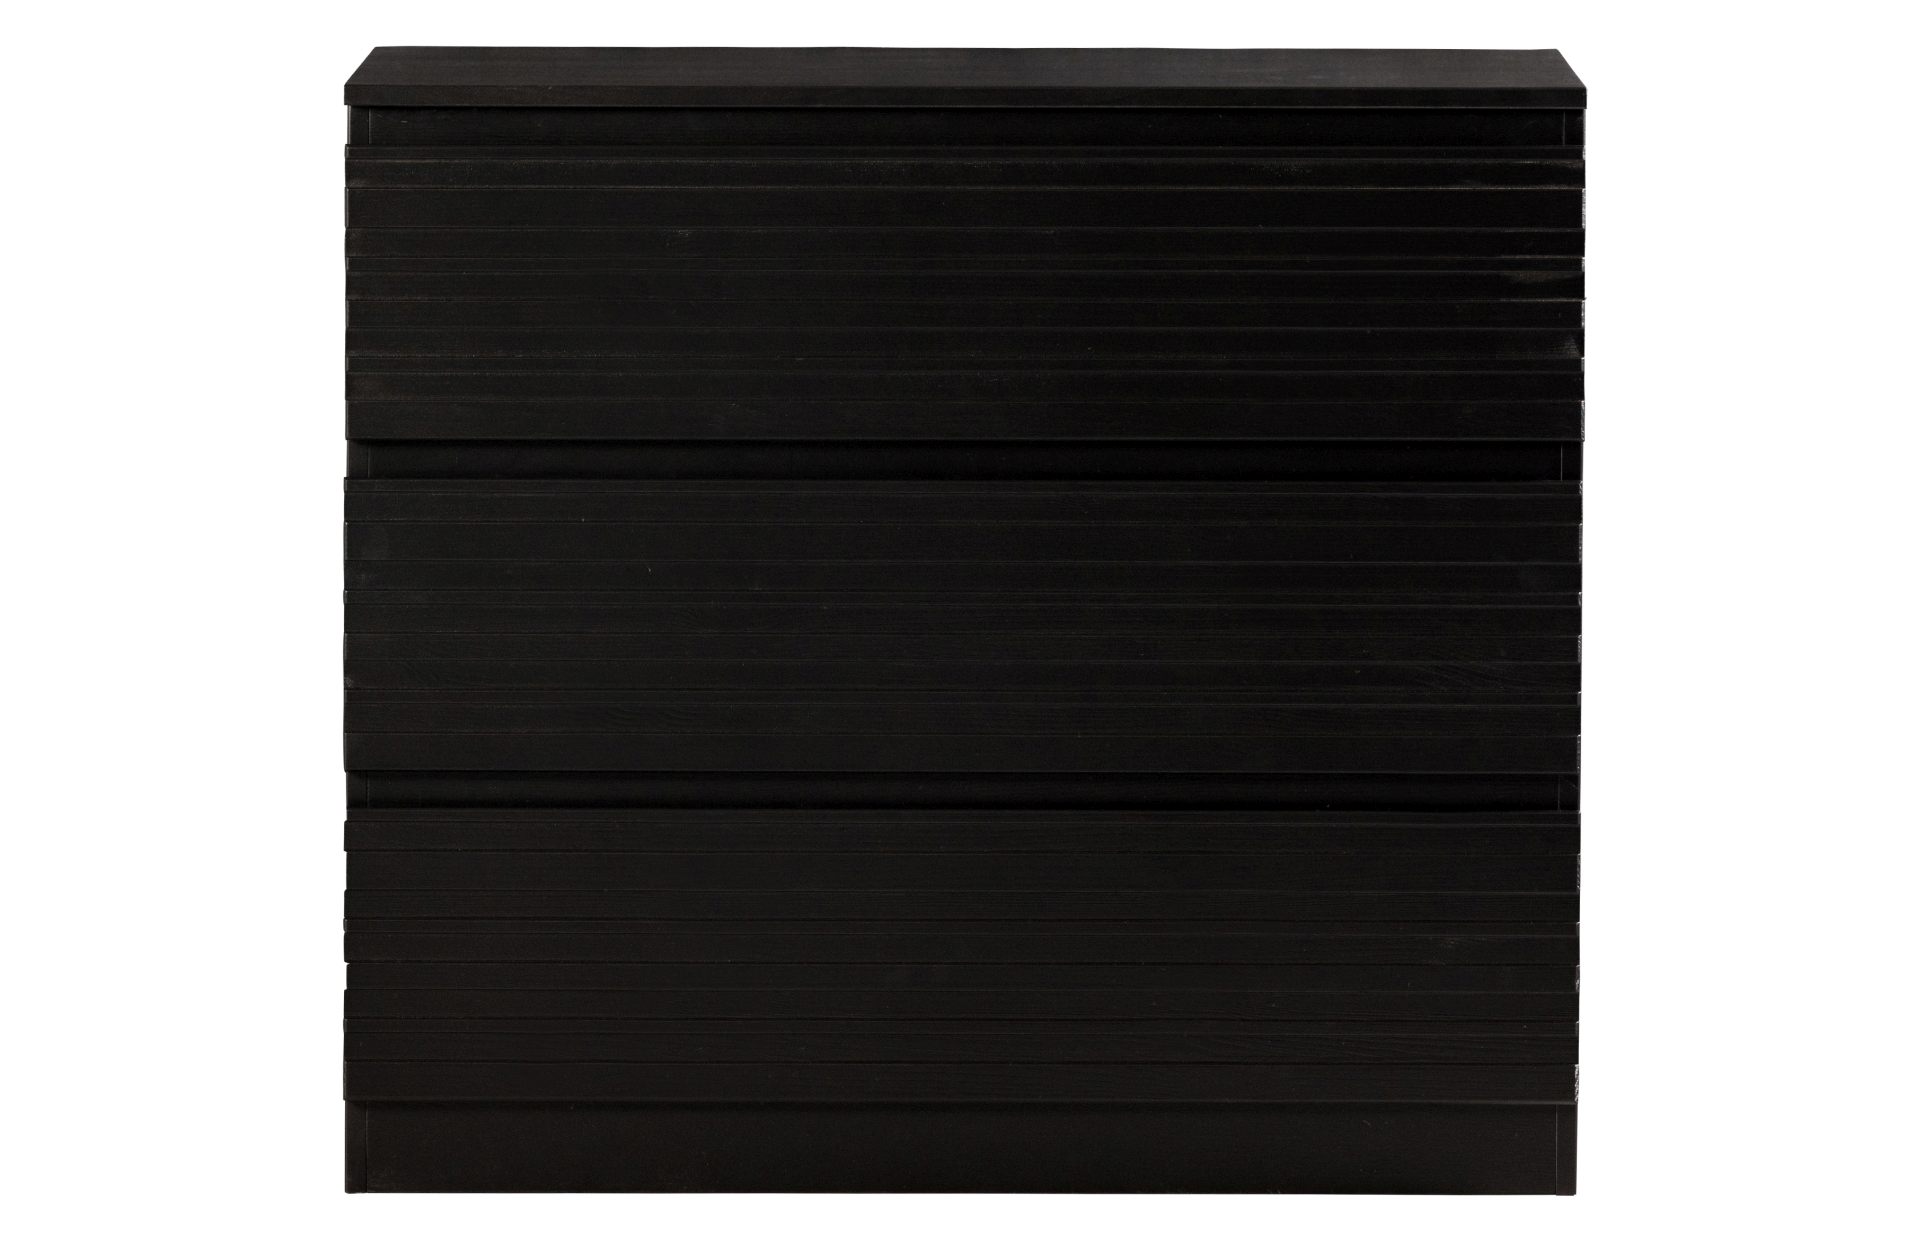 Die Kommode Jente wurde aus Kiefernholz hergestellt, welches einen schwarzen Farbton besitzt. Die Kommode ist in zwei Varianten verfügbar, diese hat 3 Schubladen.